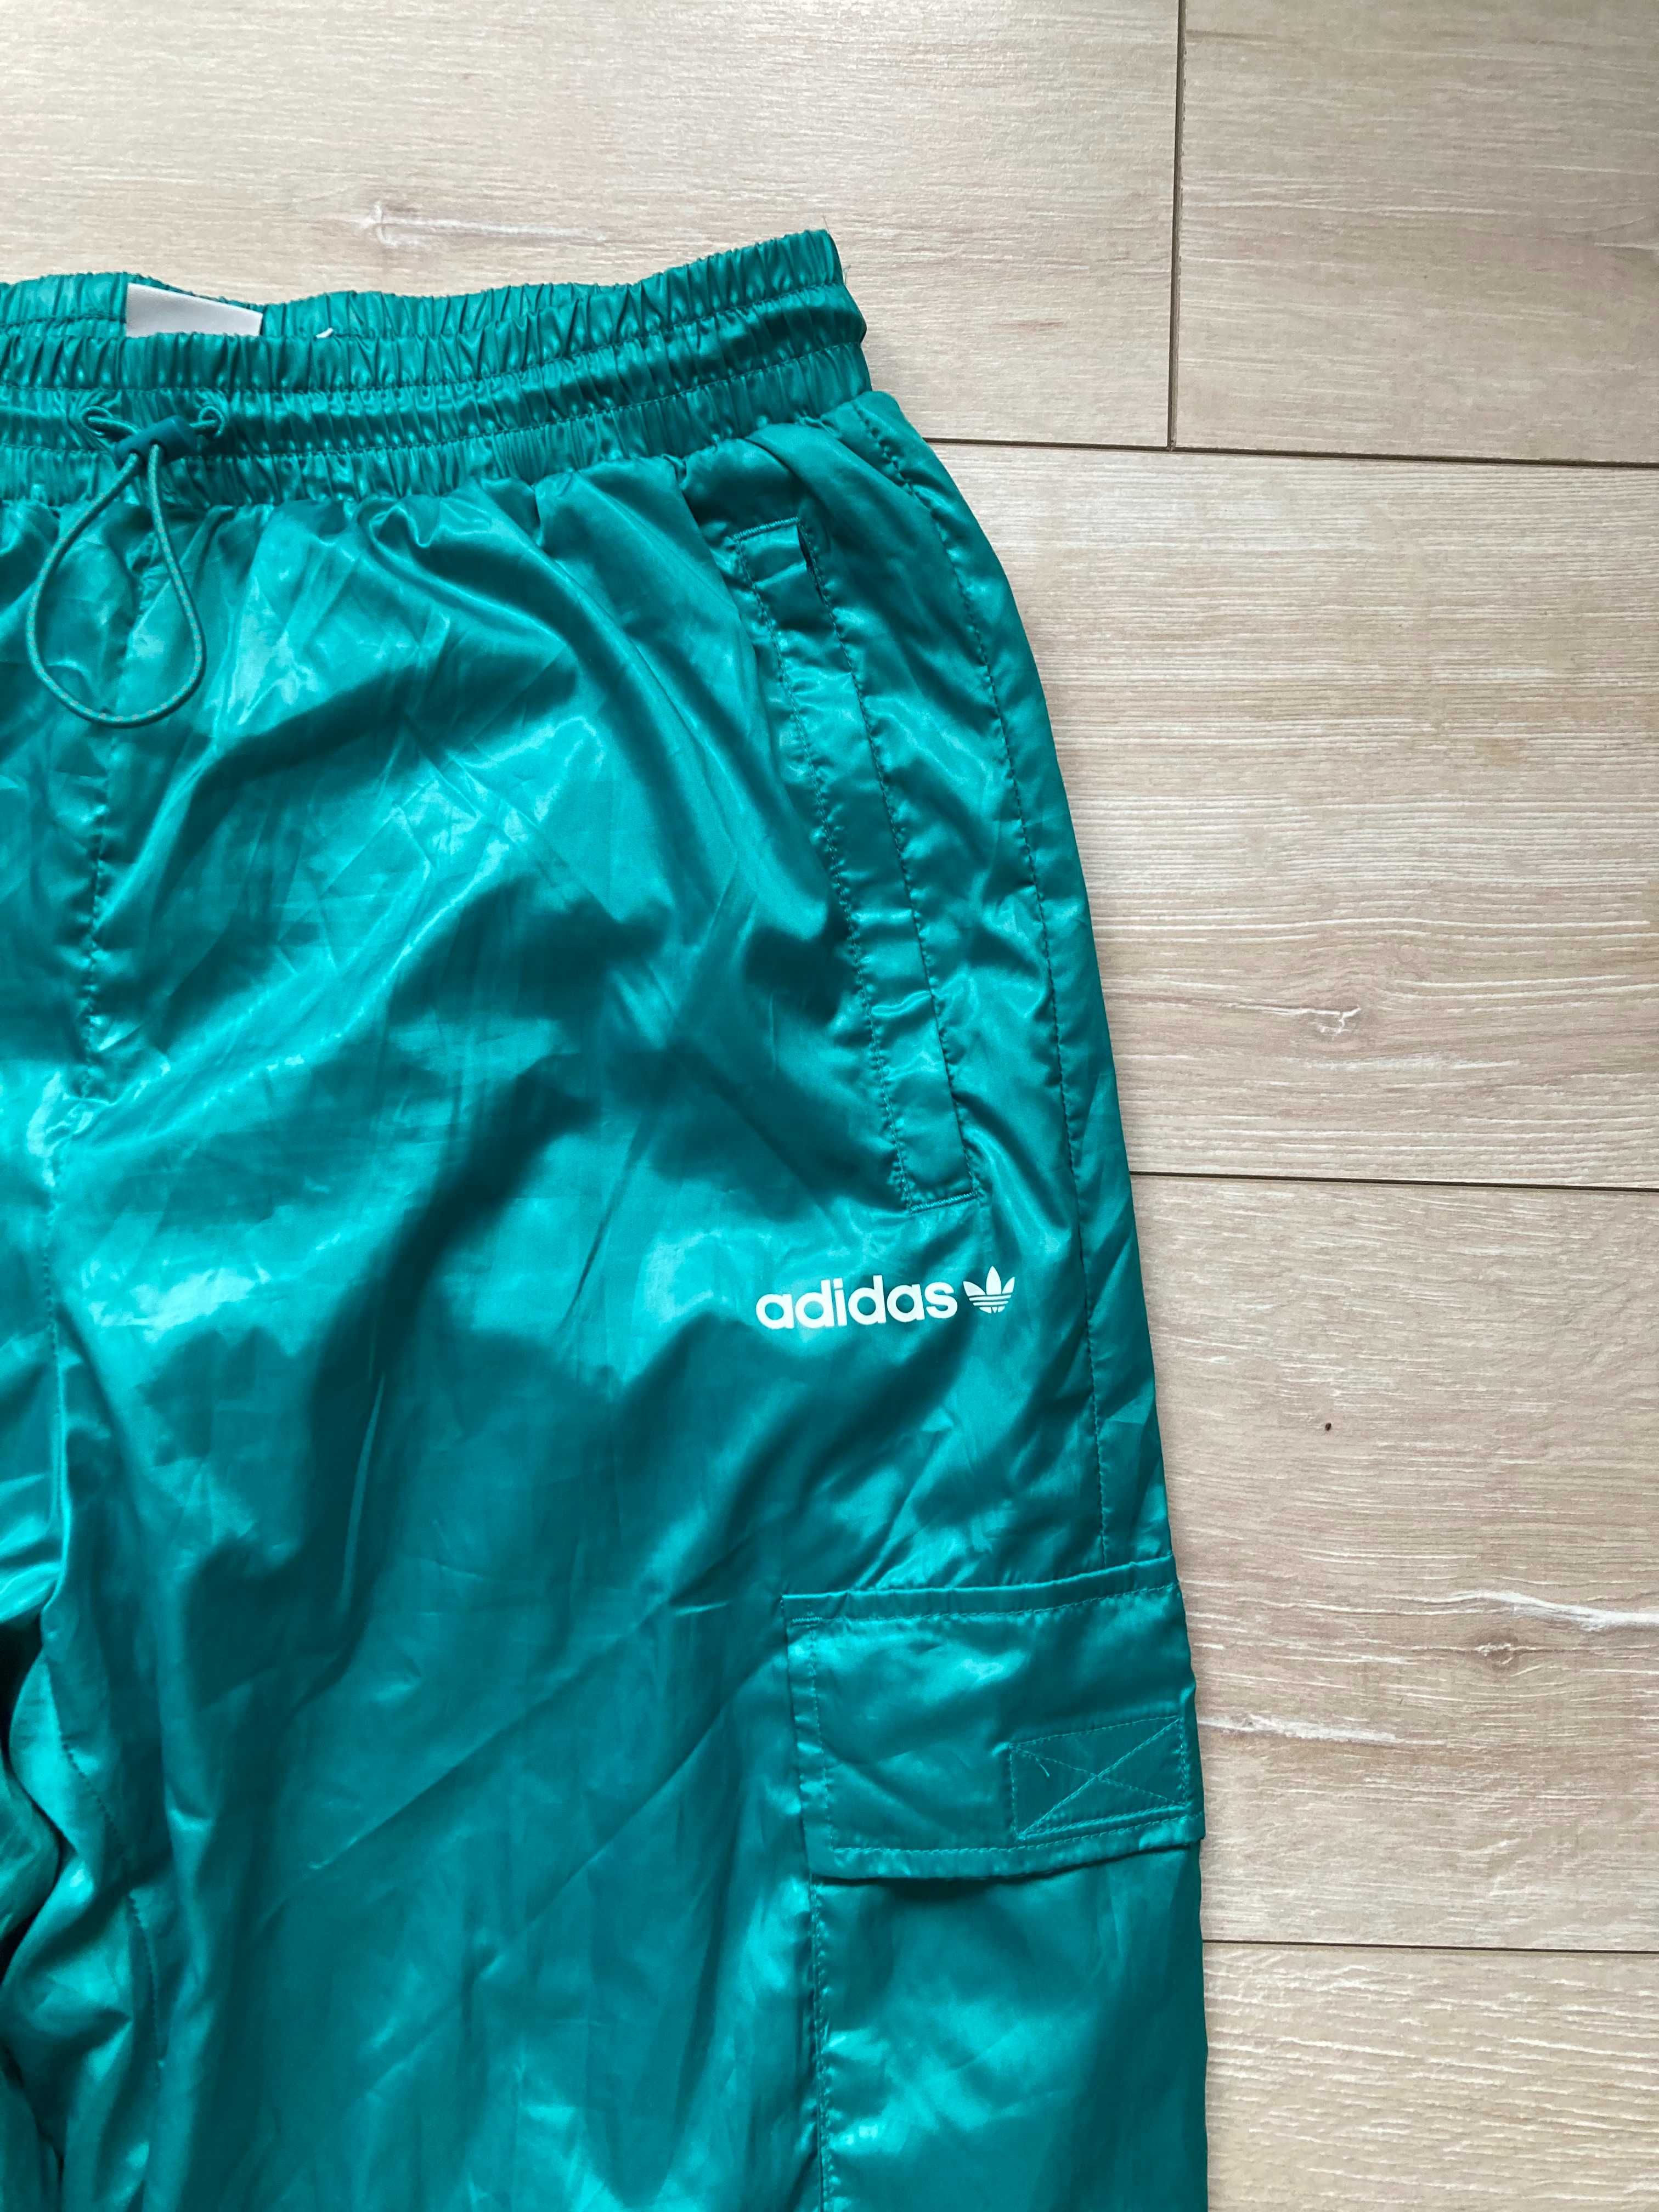 Адидас Adidas Originals Shiny Pants женско долнище долница 38 S